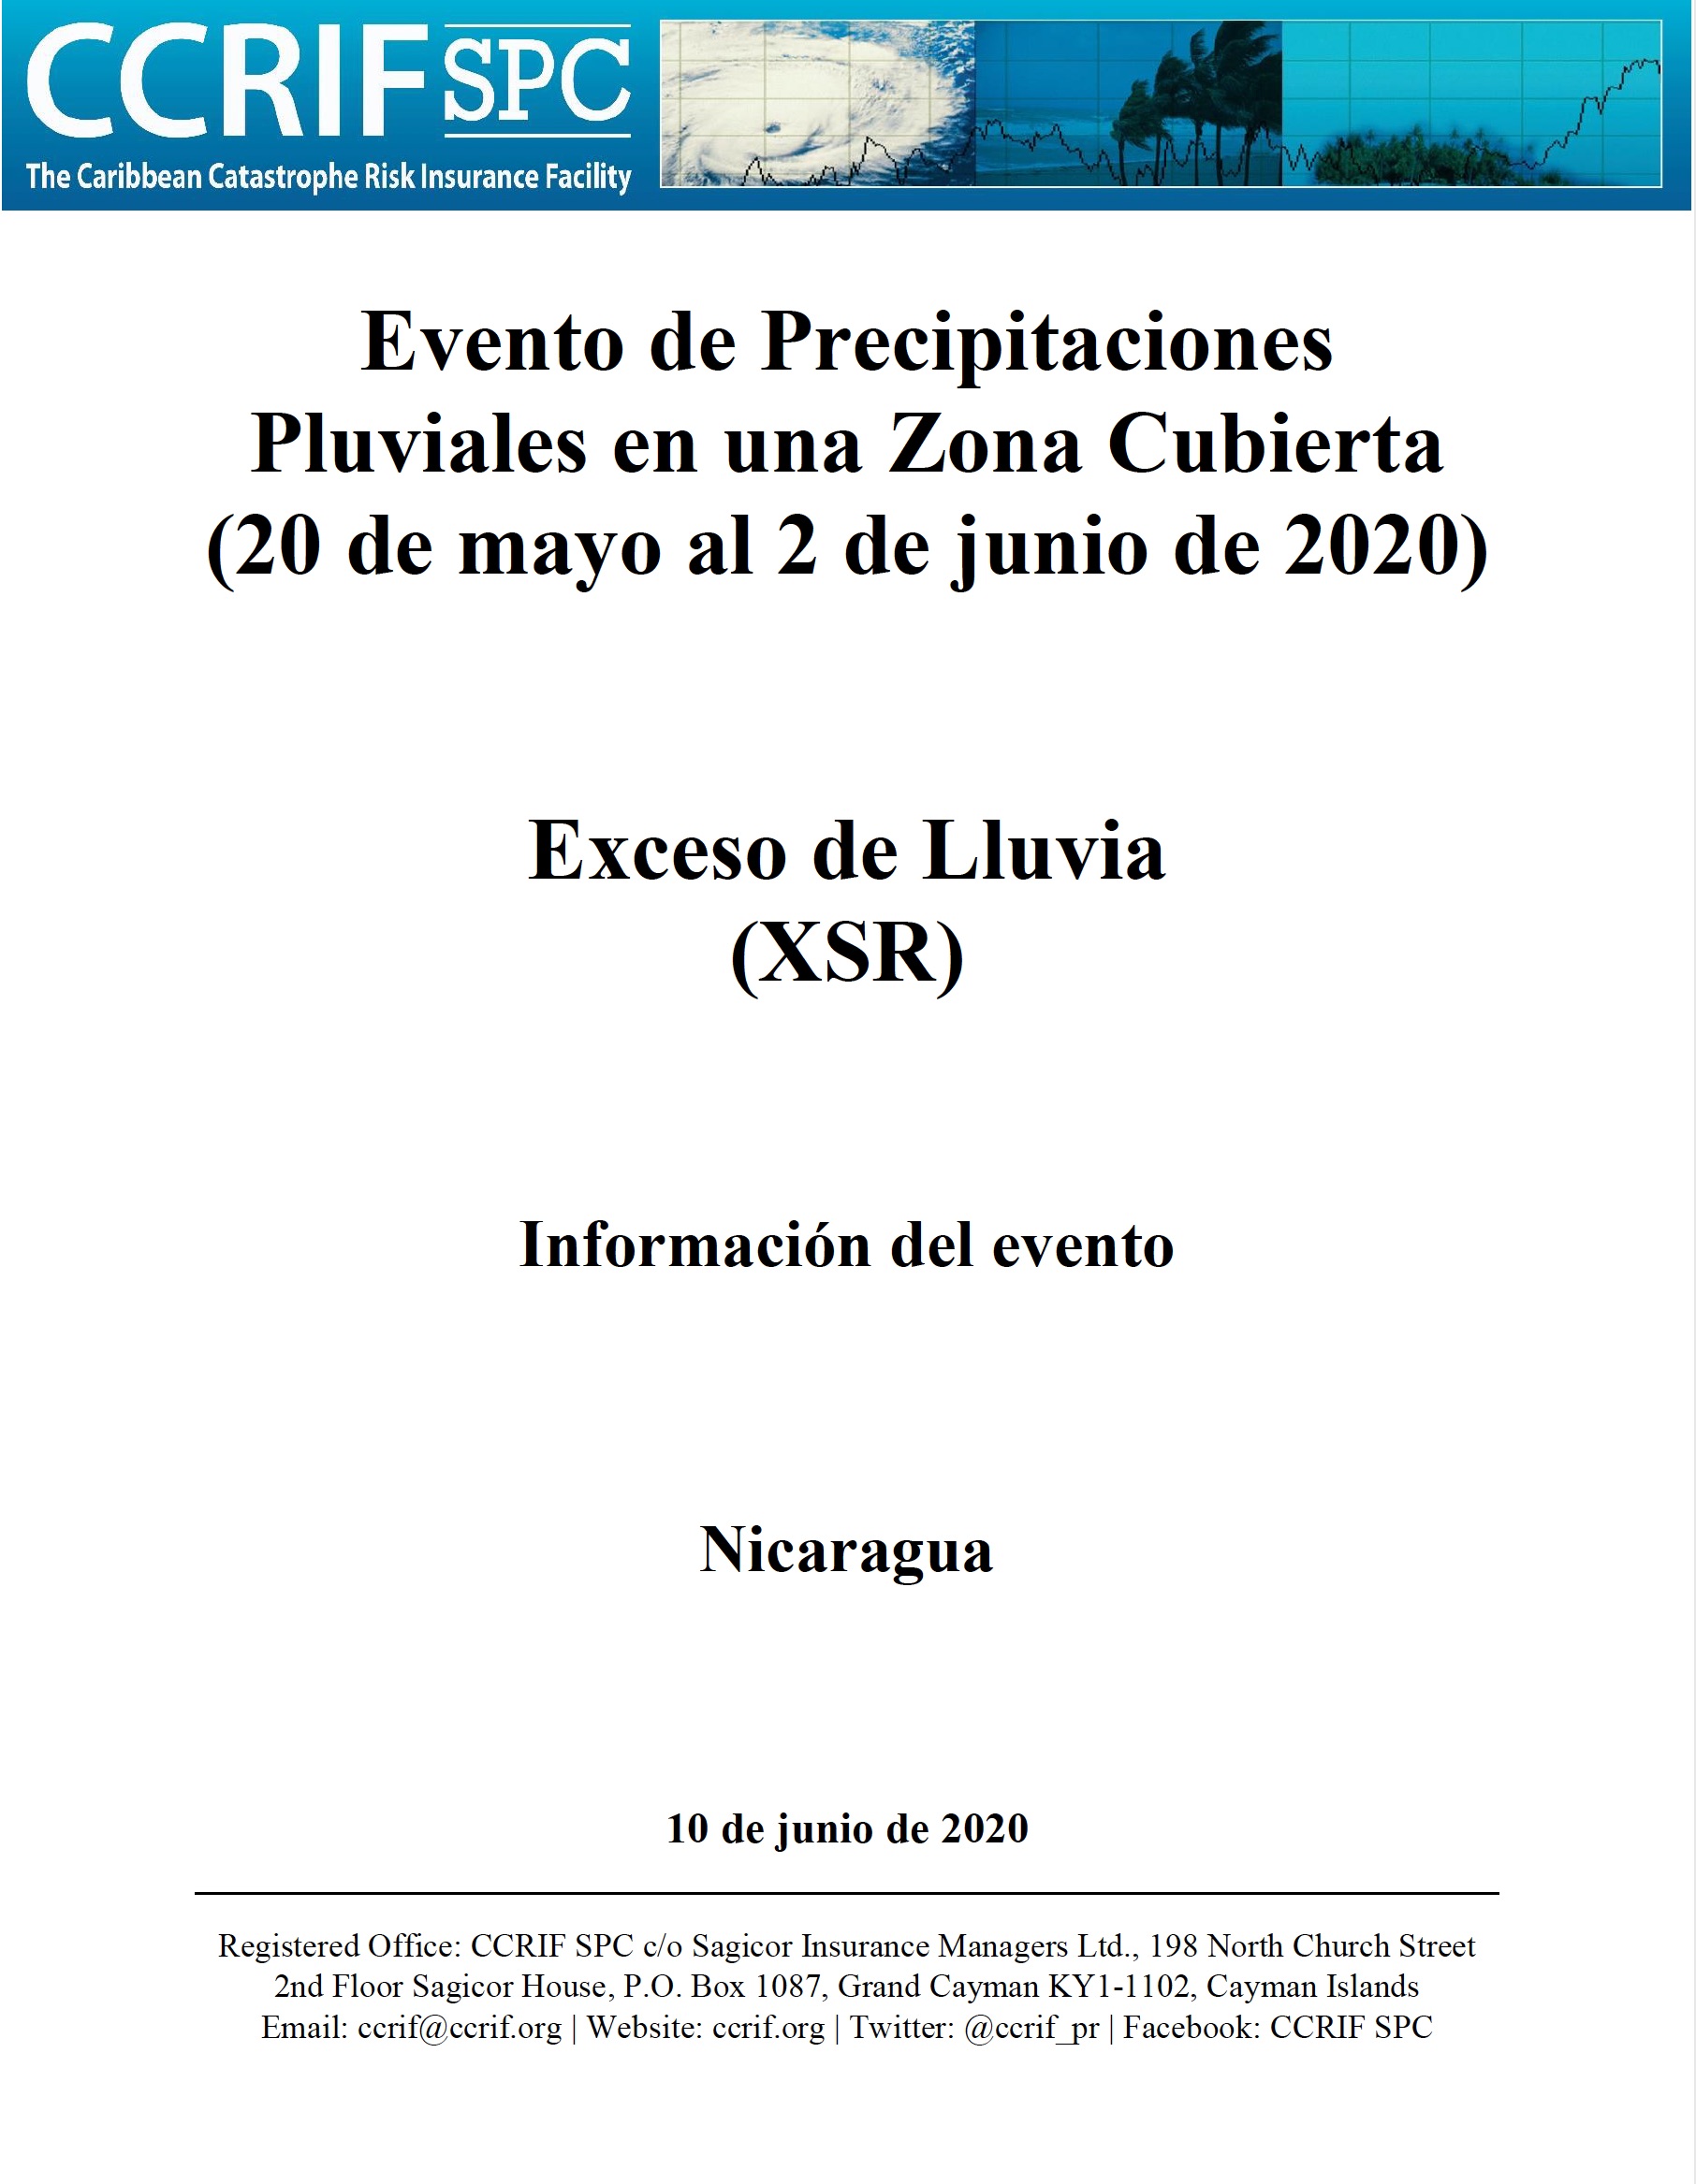 Información del evento - Exceso de Precipitación- Evento de Precipitaciones Pluviales en una Zona Cubierta- Nicaragua - 10 de junio de 2020